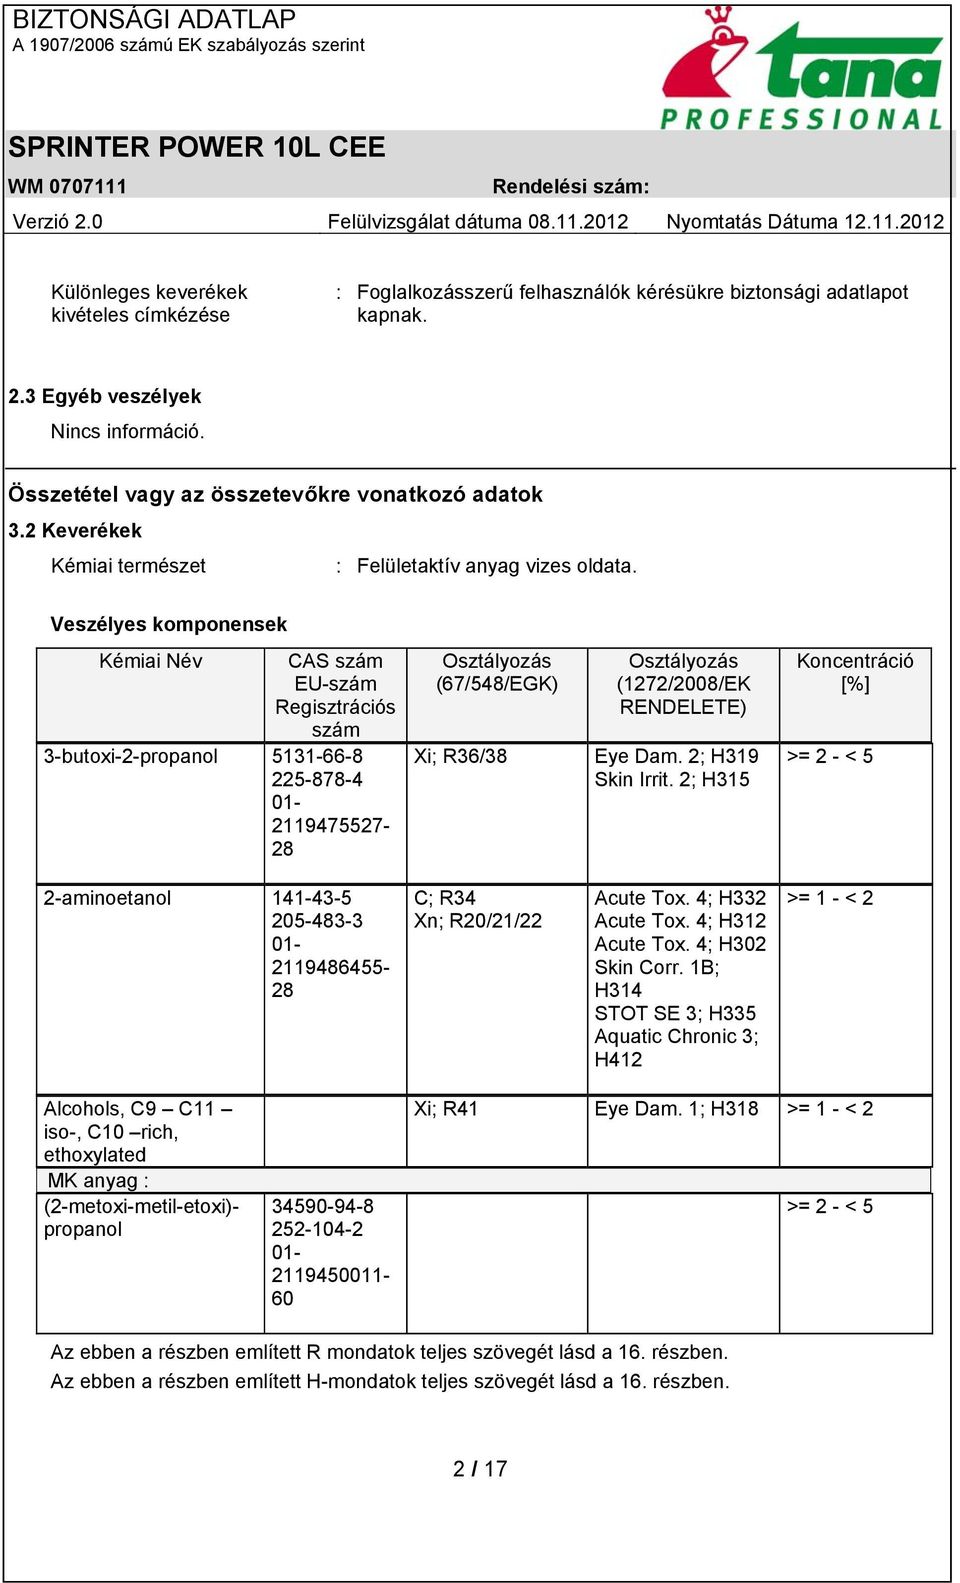 Veszélyes komponensek Kémiai Név CAS szám EU-szám Regisztrációs szám 3-butoxi-2-propanol 5131-66-8 225-878-4 01-2119475527- 28 Osztályozás (67/548/EGK) Xi; R36/38 Osztályozás (1272/2008/EK RENDELETE)